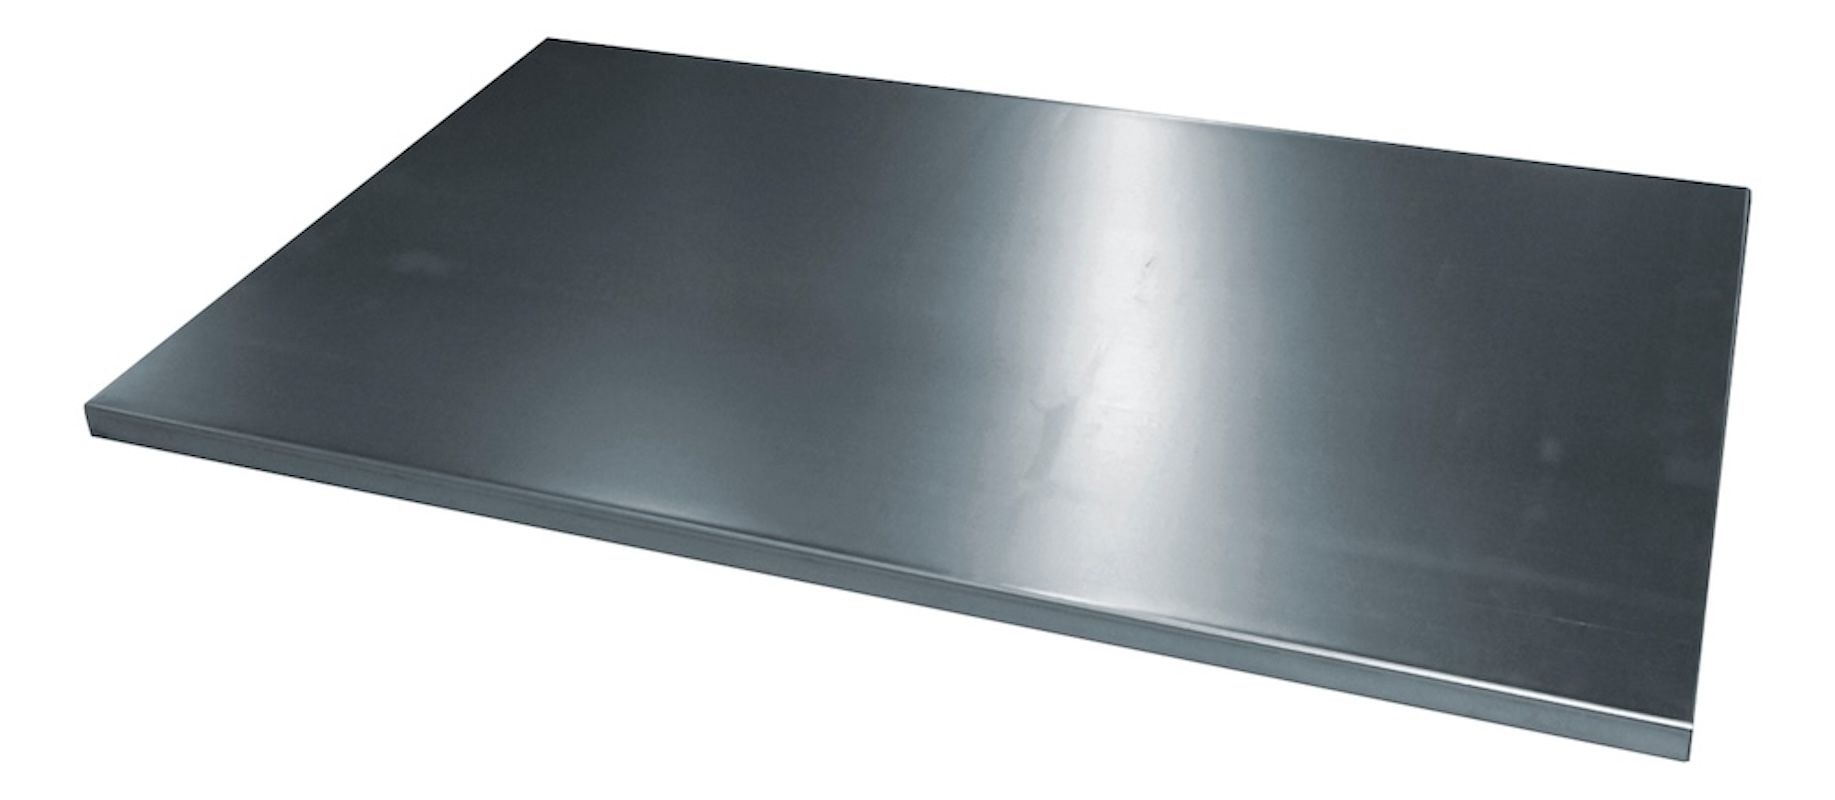 C+P Einlegeboden aus Stahl verzinkt, 2 fach verstärkt | HxBxT 2,4x92,5x55,2cm